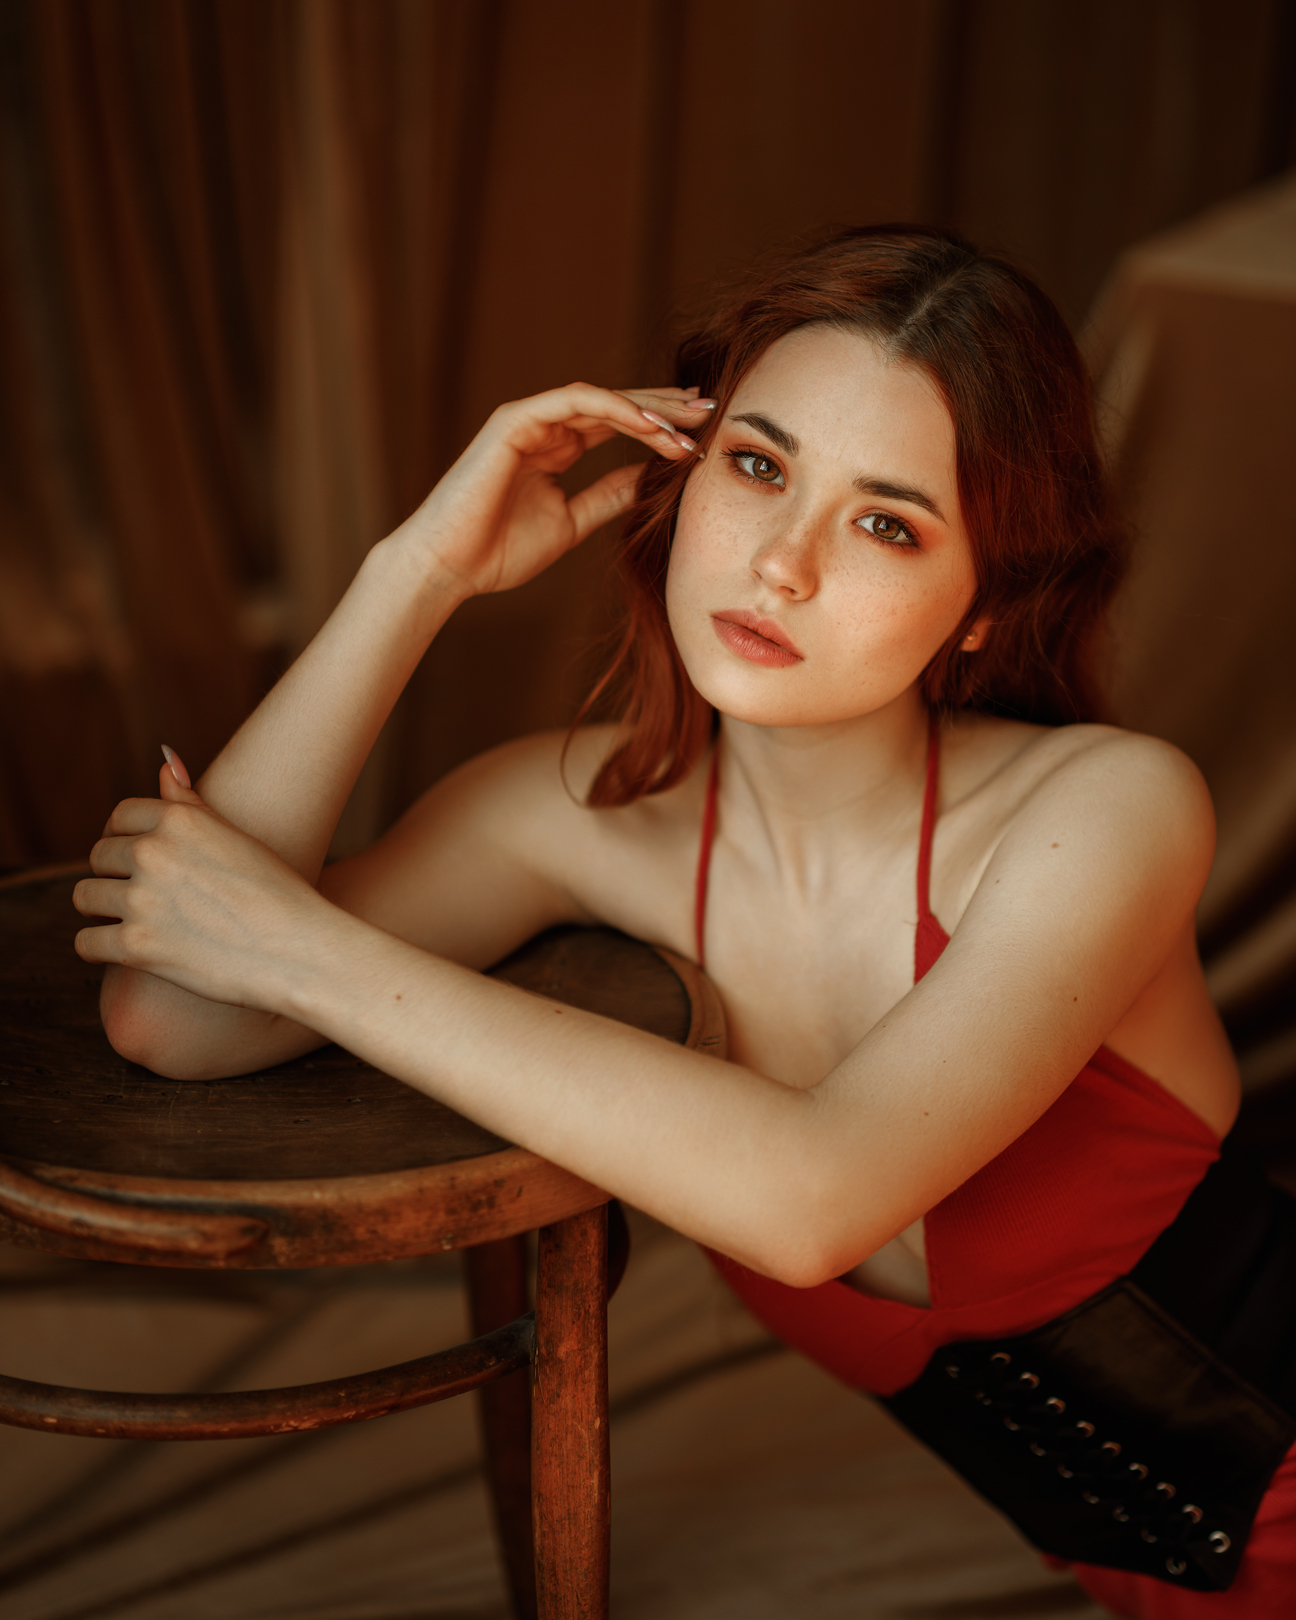 Ksenia Sergeeva Women Redhead Freckles Eyeshadow Makeup Red Clothing Chair Indoors Bare Shoulders 1296x1620